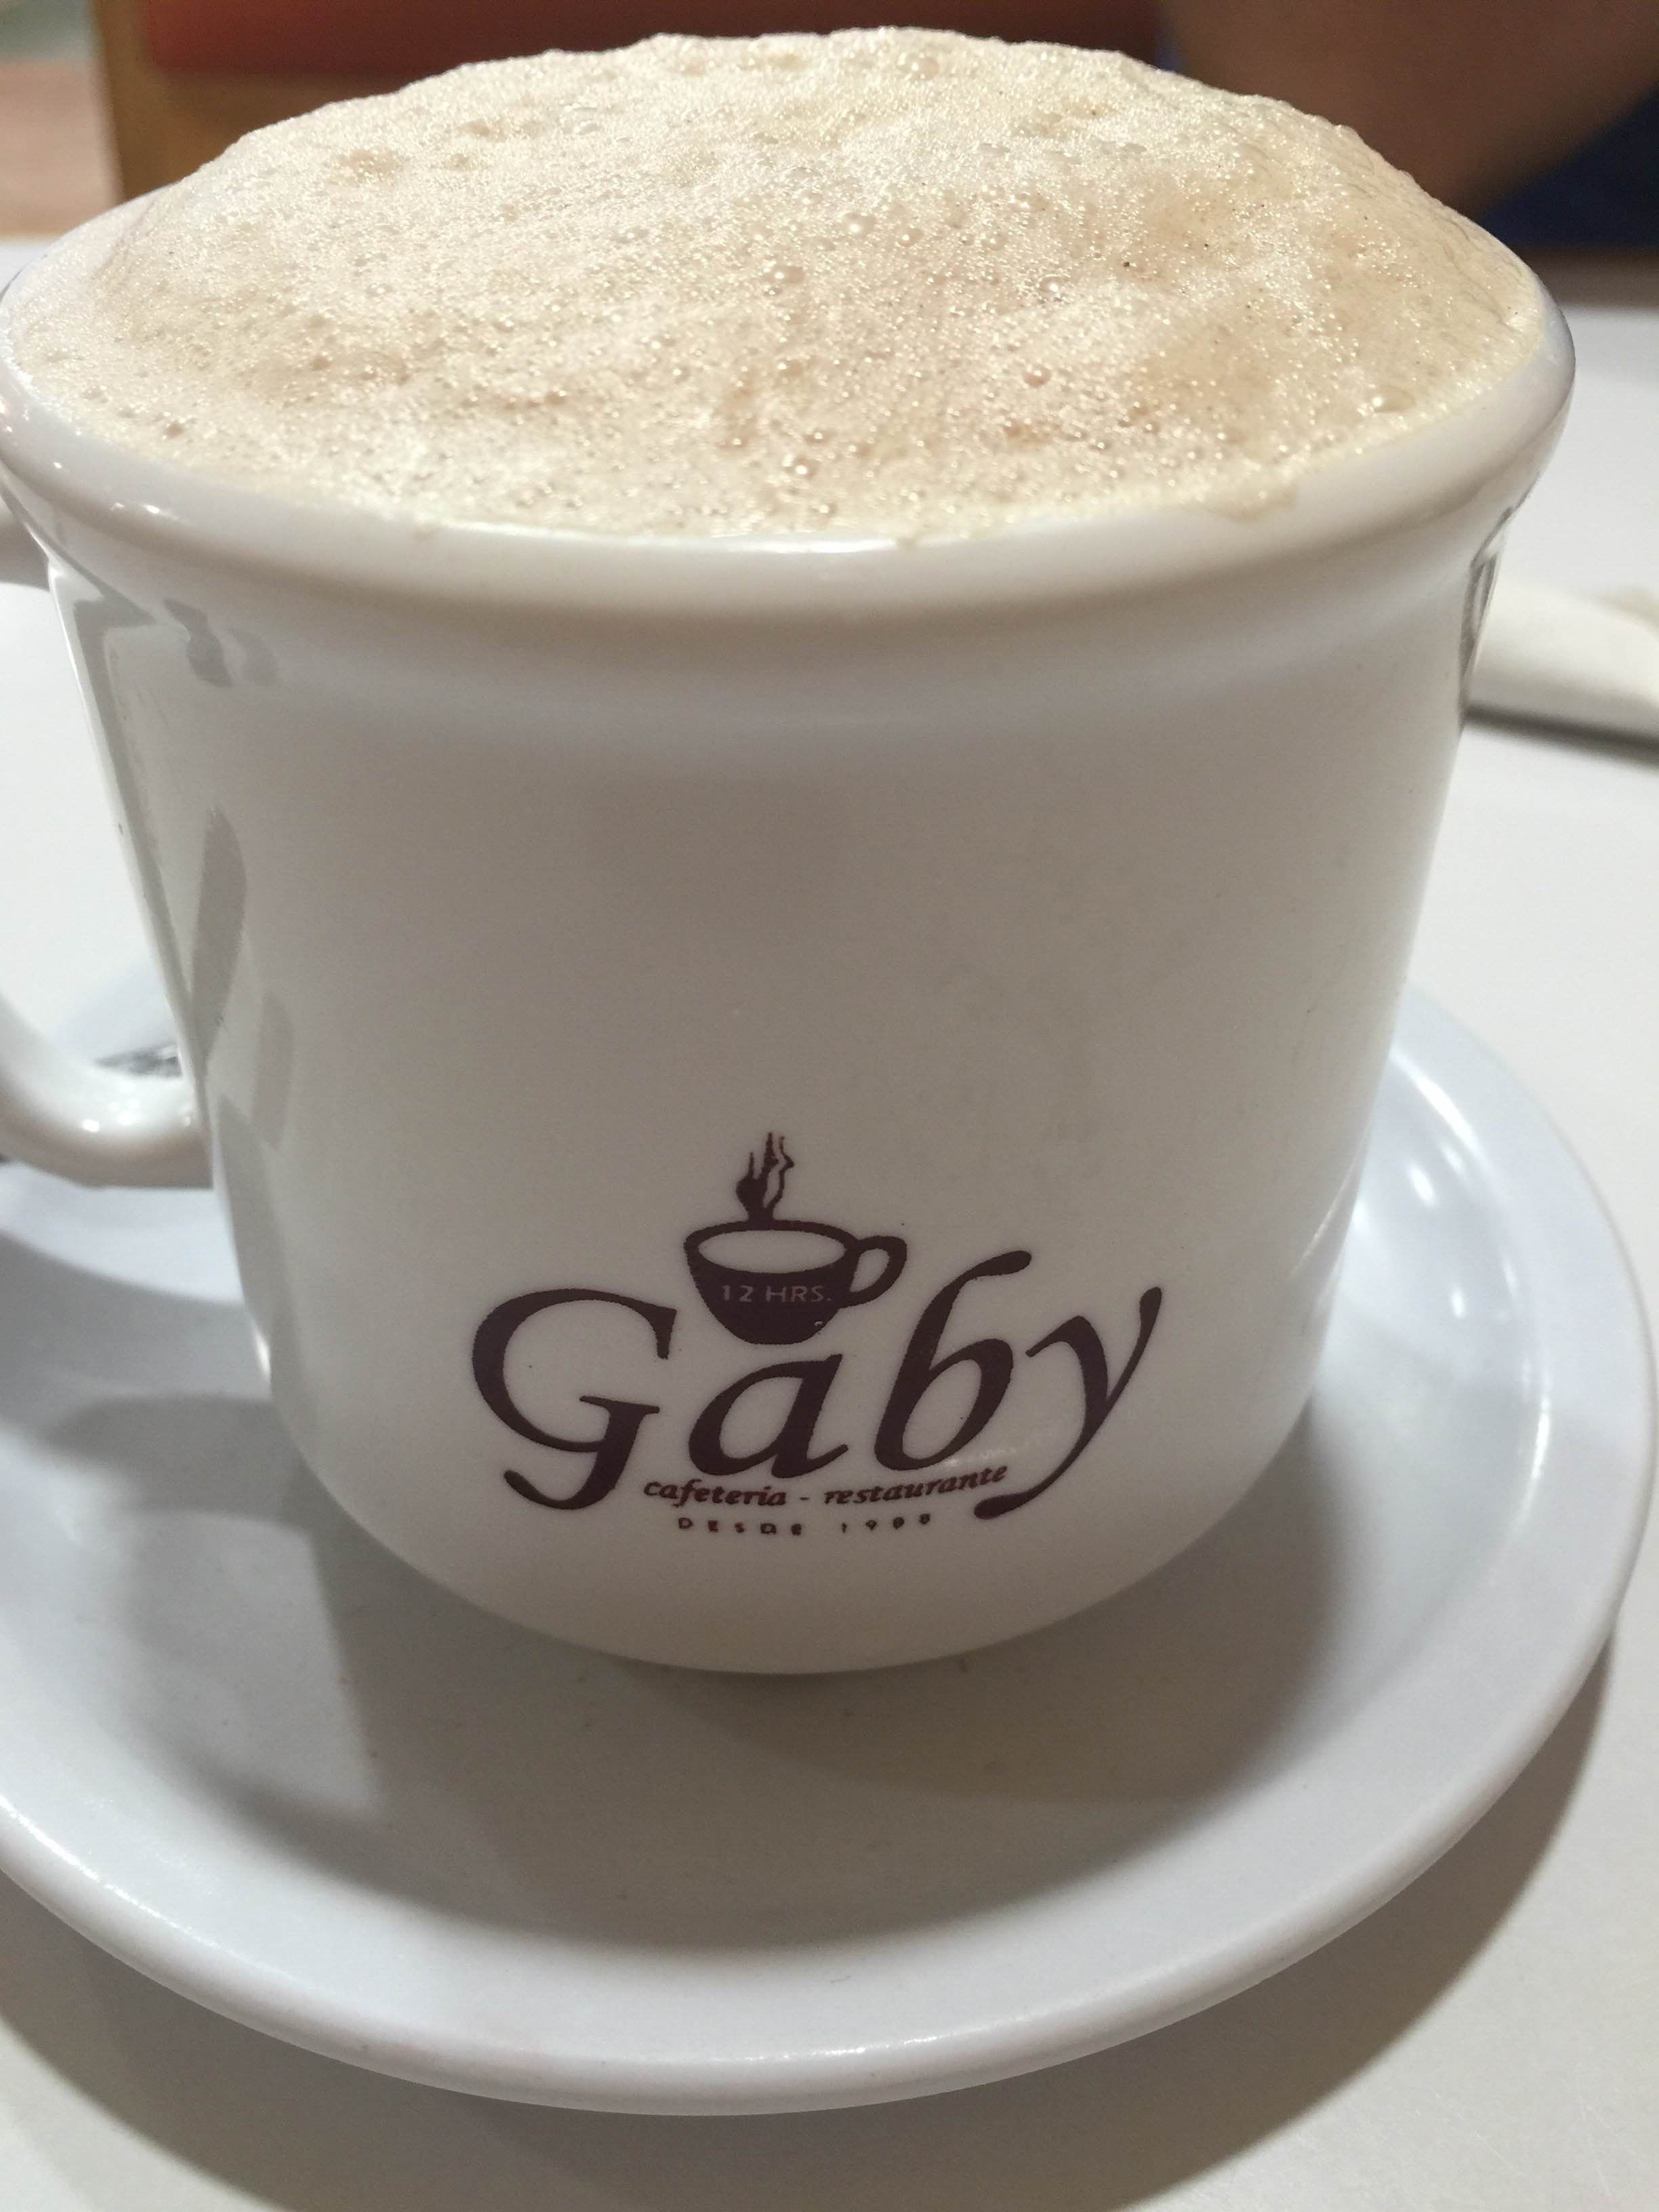 Gaby cafeteria-restaurante en Monterrey: 1 opiniones y 1 fotos